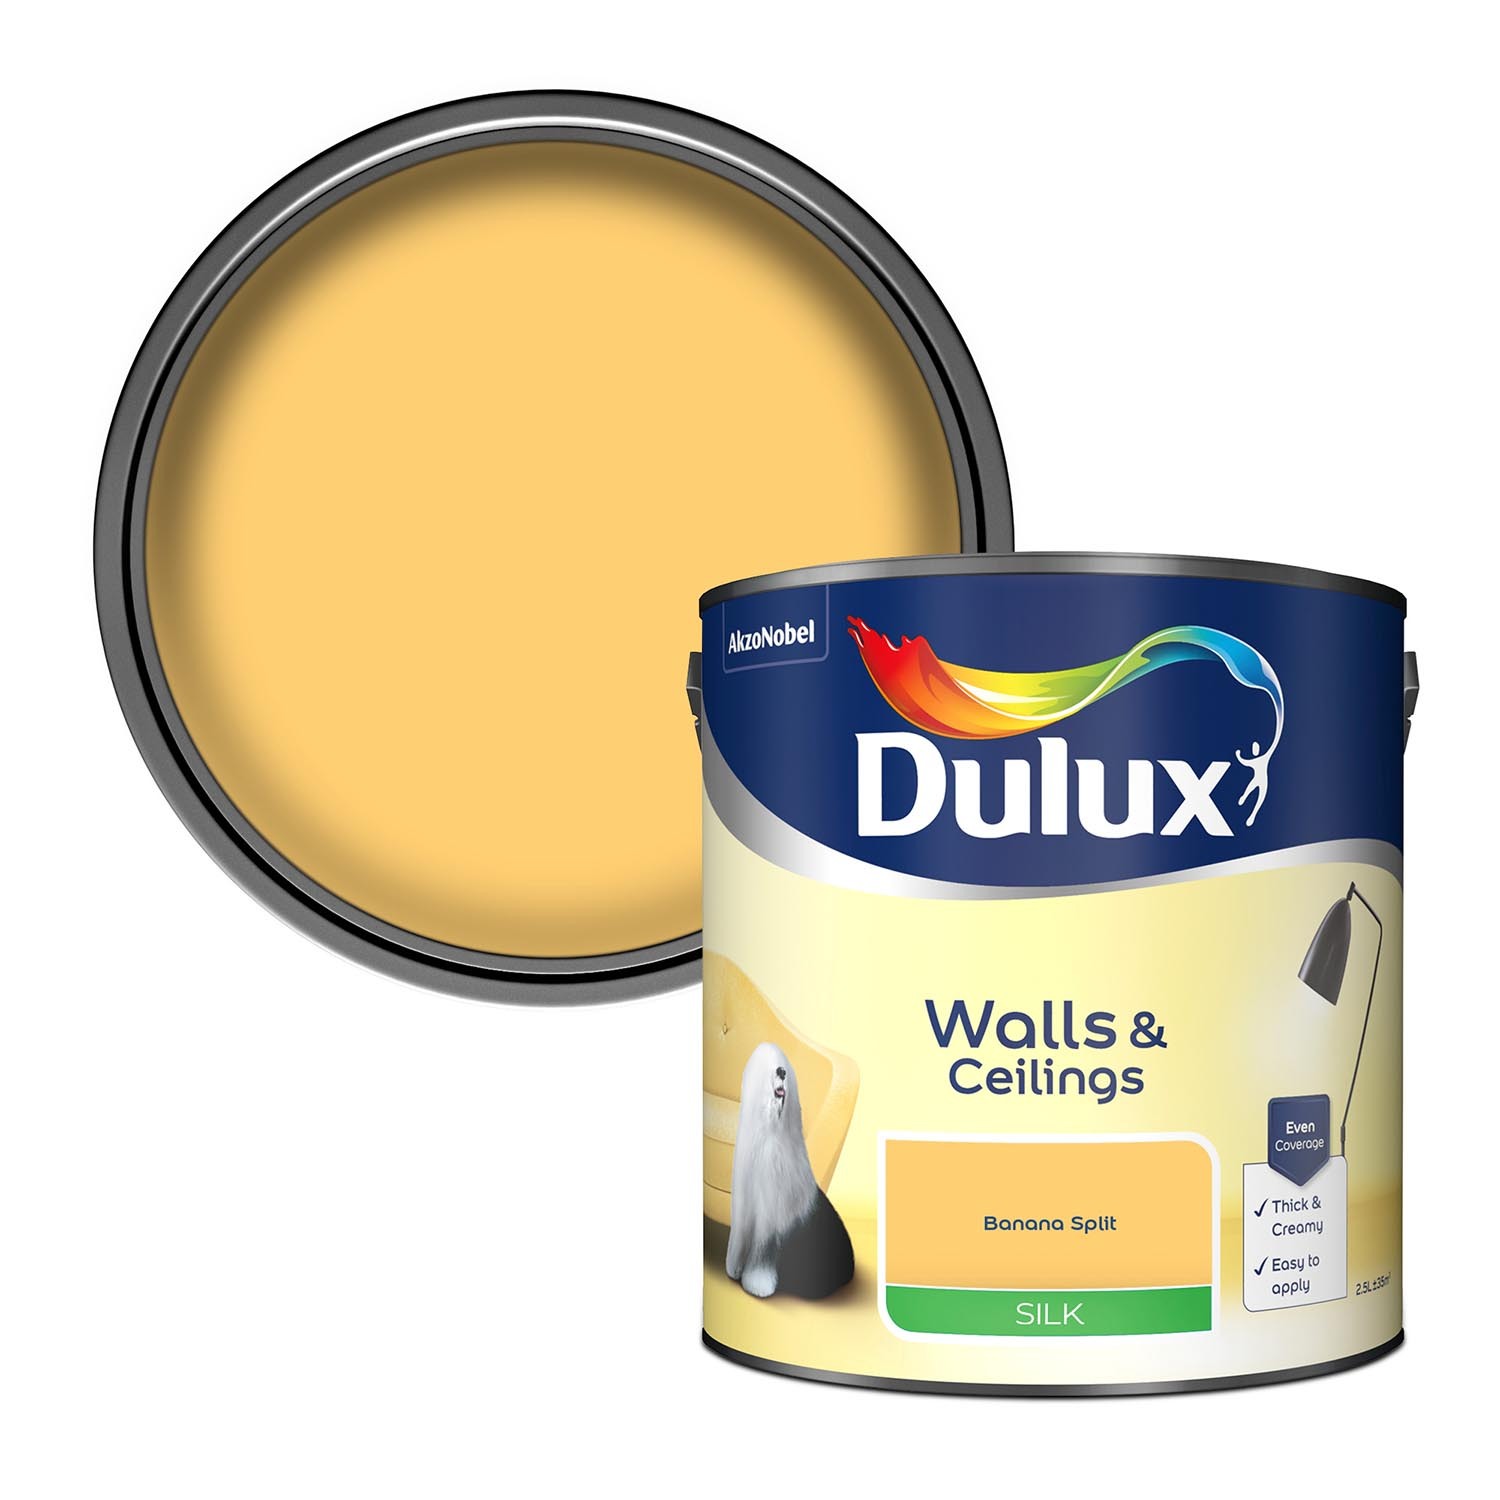 Dulux Walls & Ceilings Banana Split Silk Emulsion Paint 2.5L Image 1